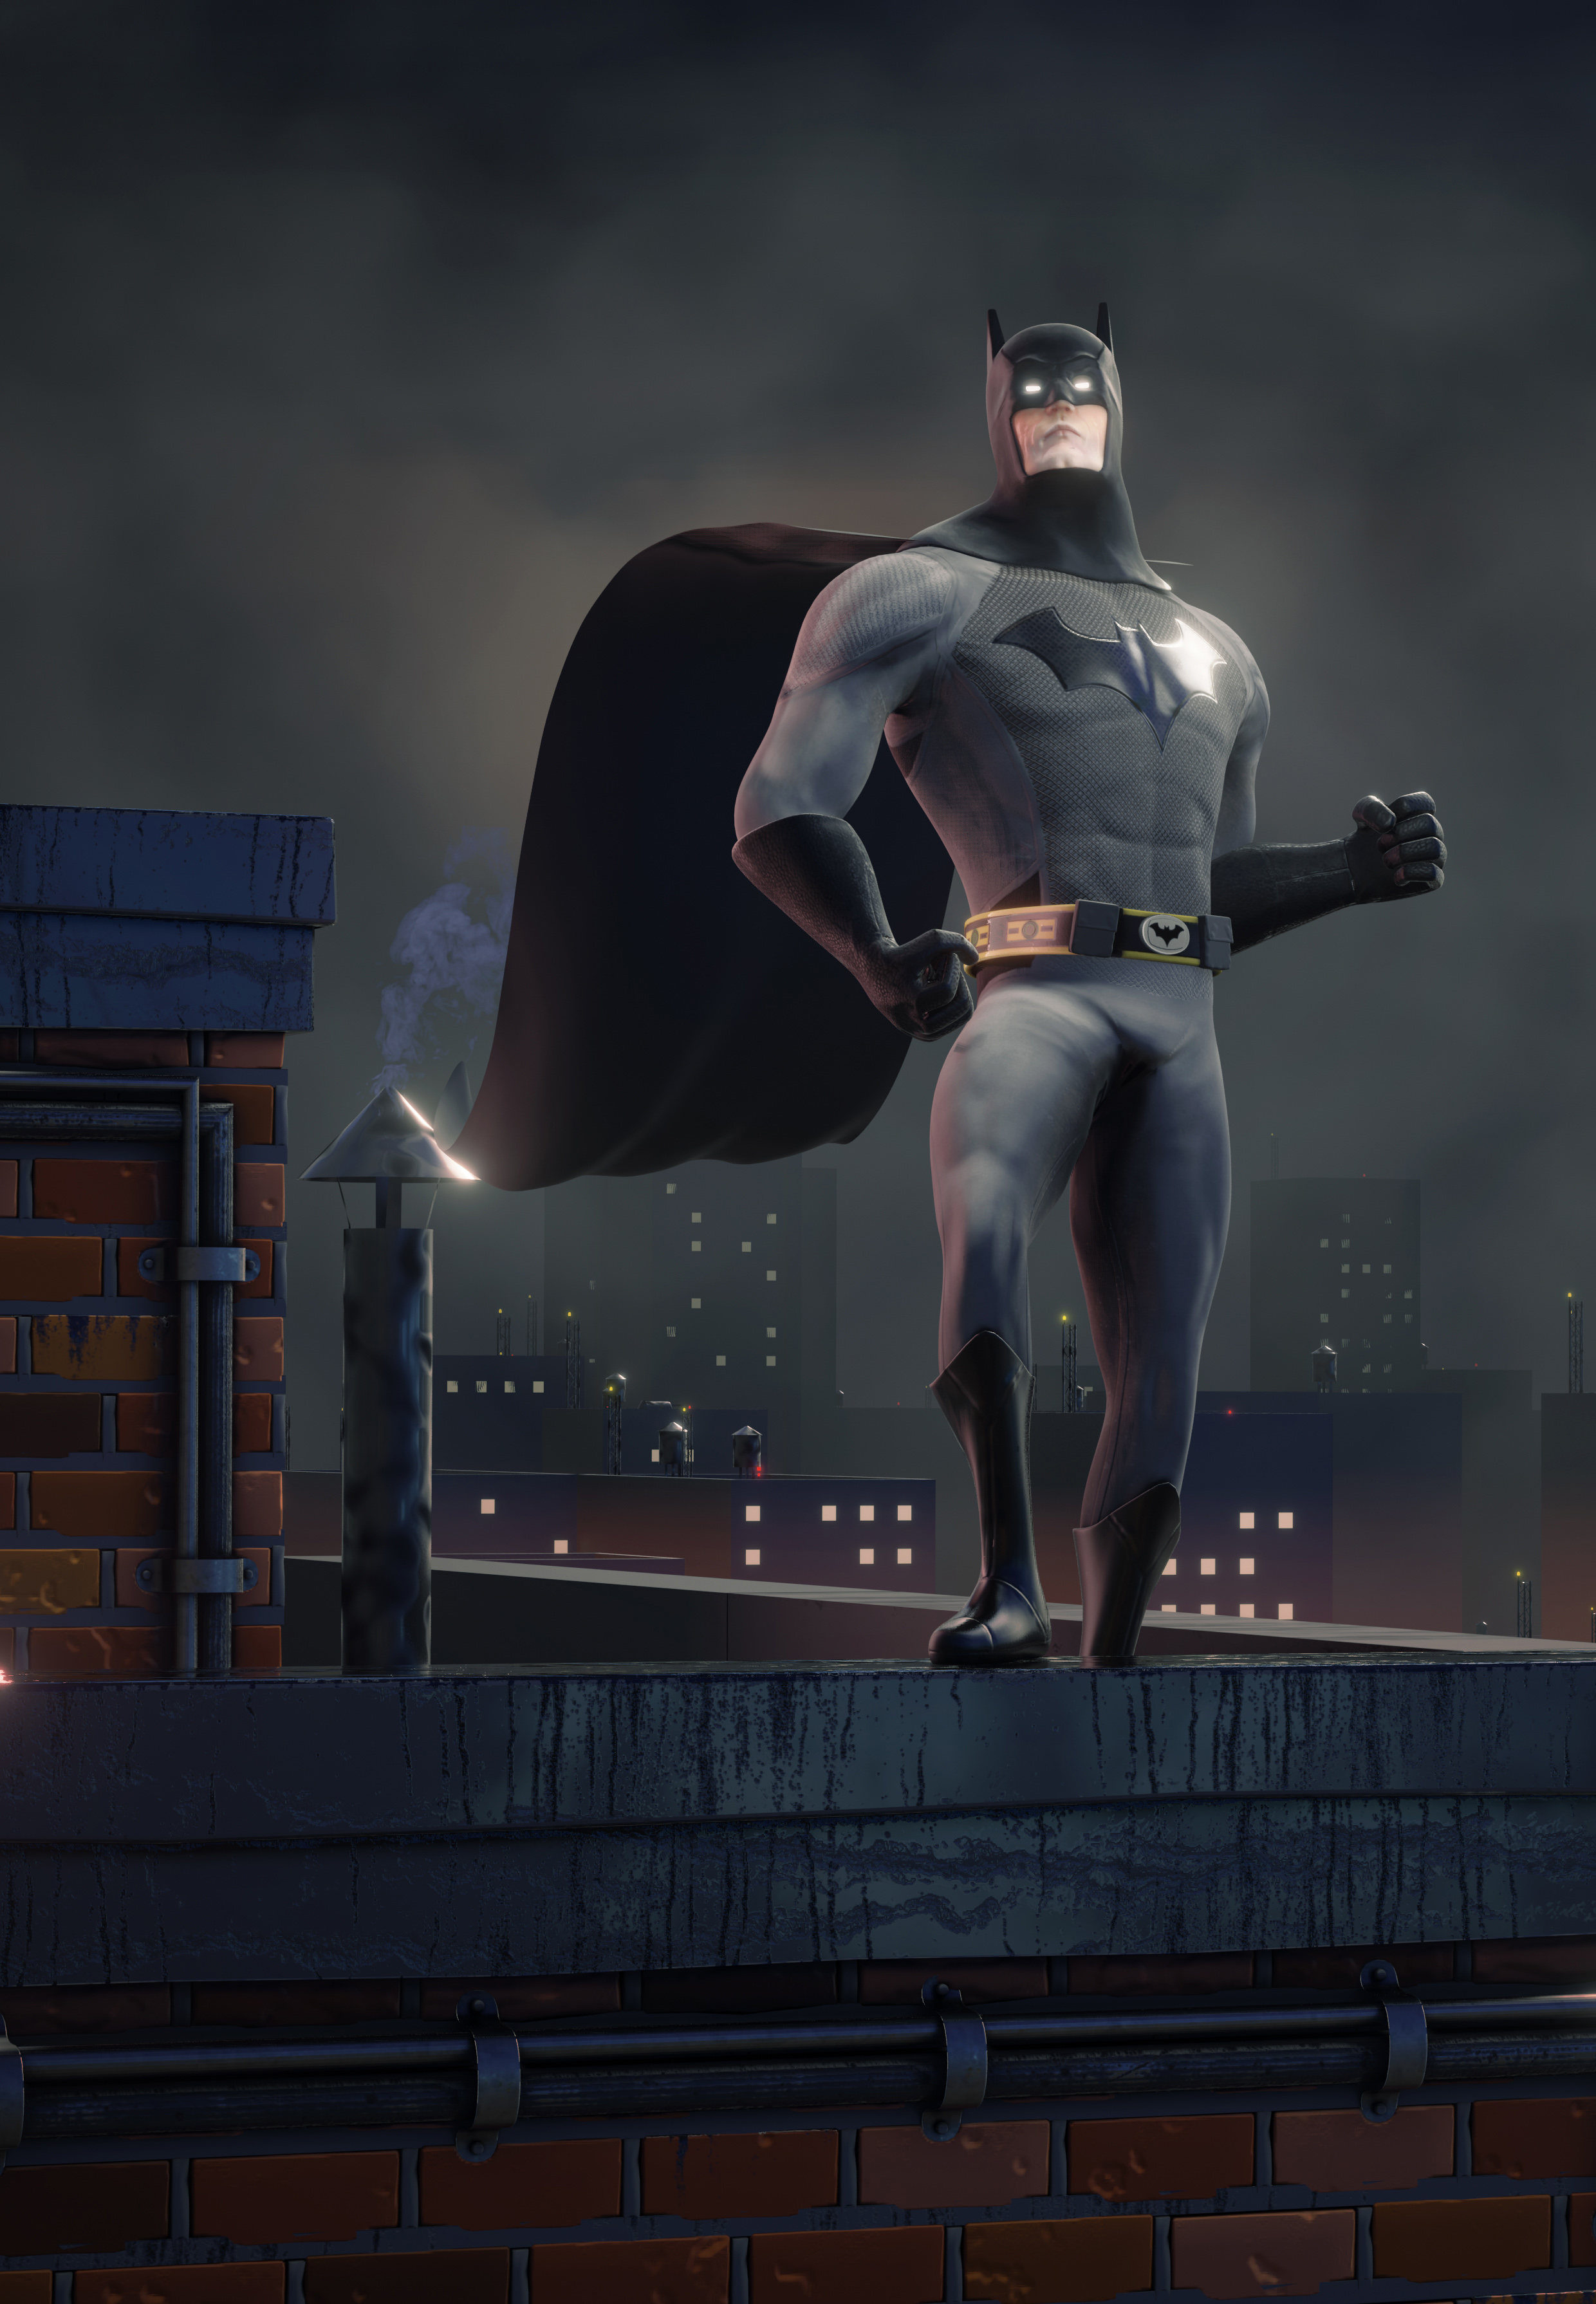 Batman fan art - Finished Projects - Blender Artists Community